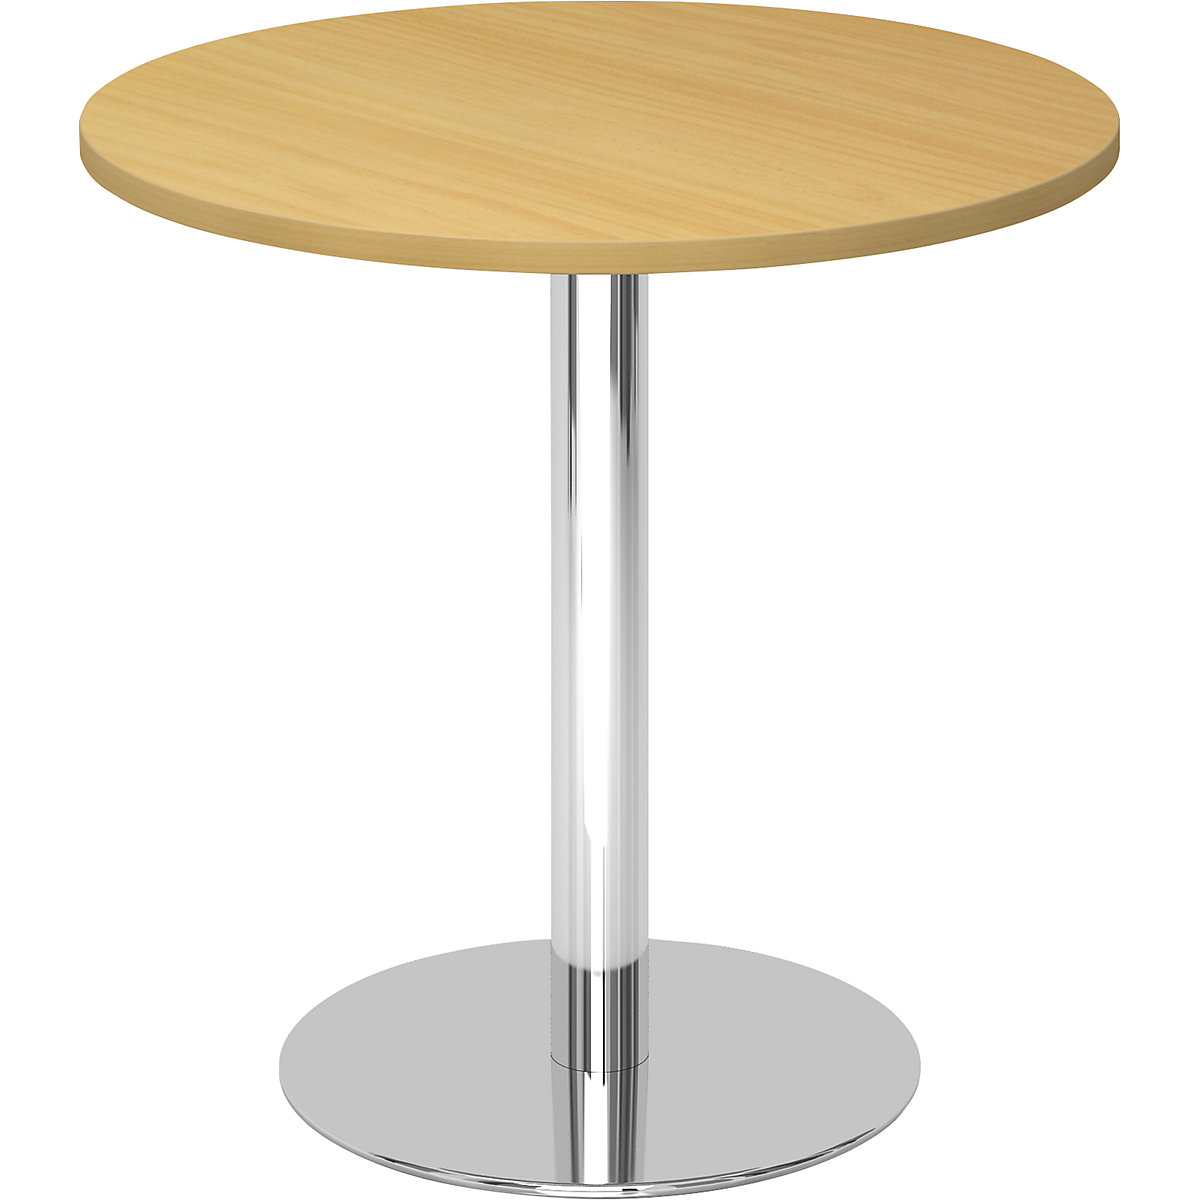 Tárgyalóasztal, Ø 800 mm, 755 mm magas, krómozott váz, bükk-dekor asztallap